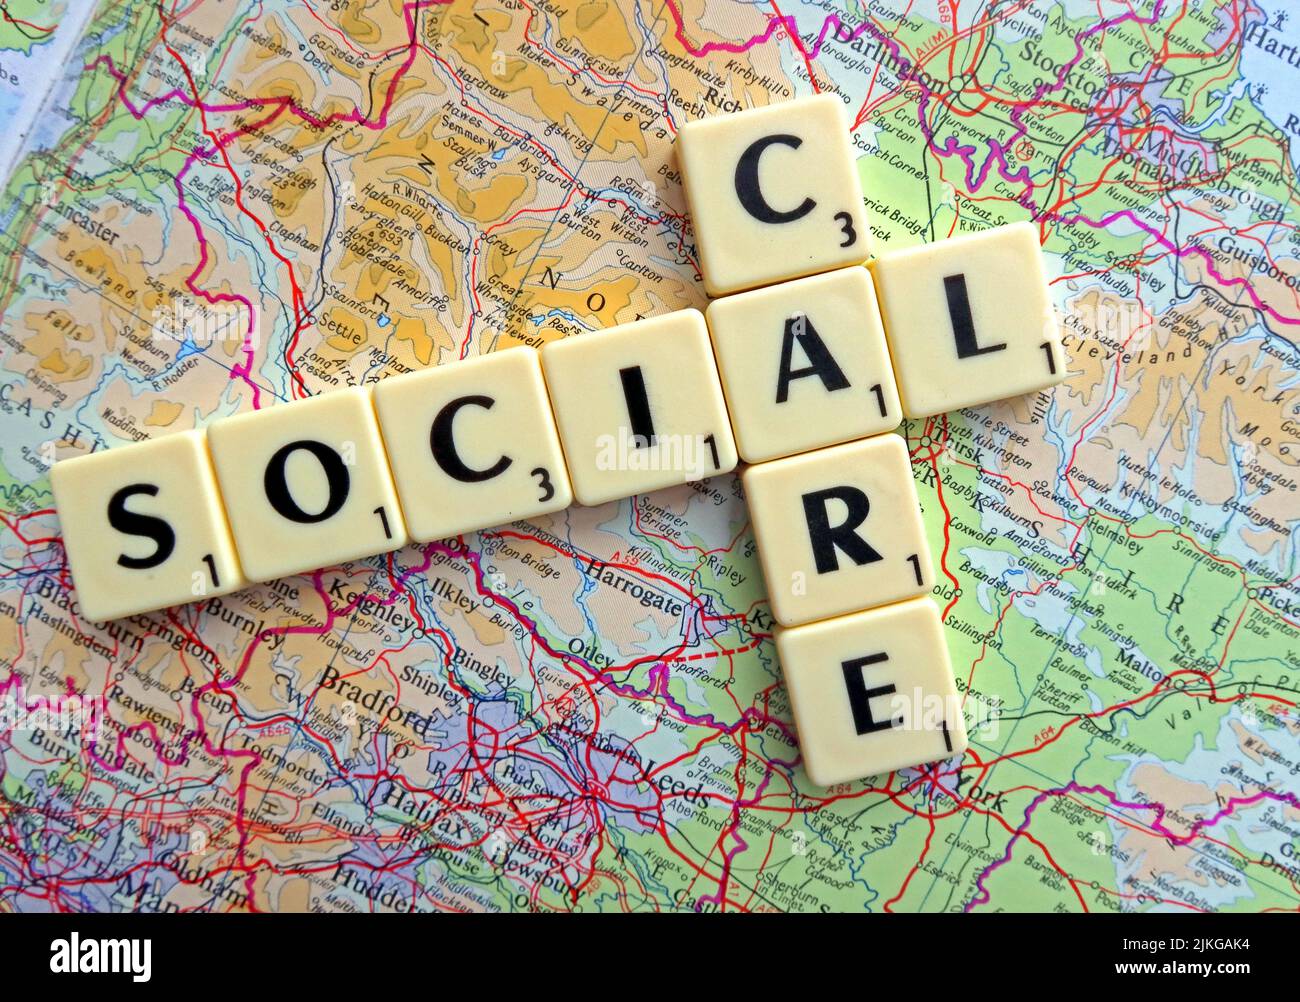 Social Care wurde in Scrabble-Briefen auf einer Karte von England geschrieben Stockfoto